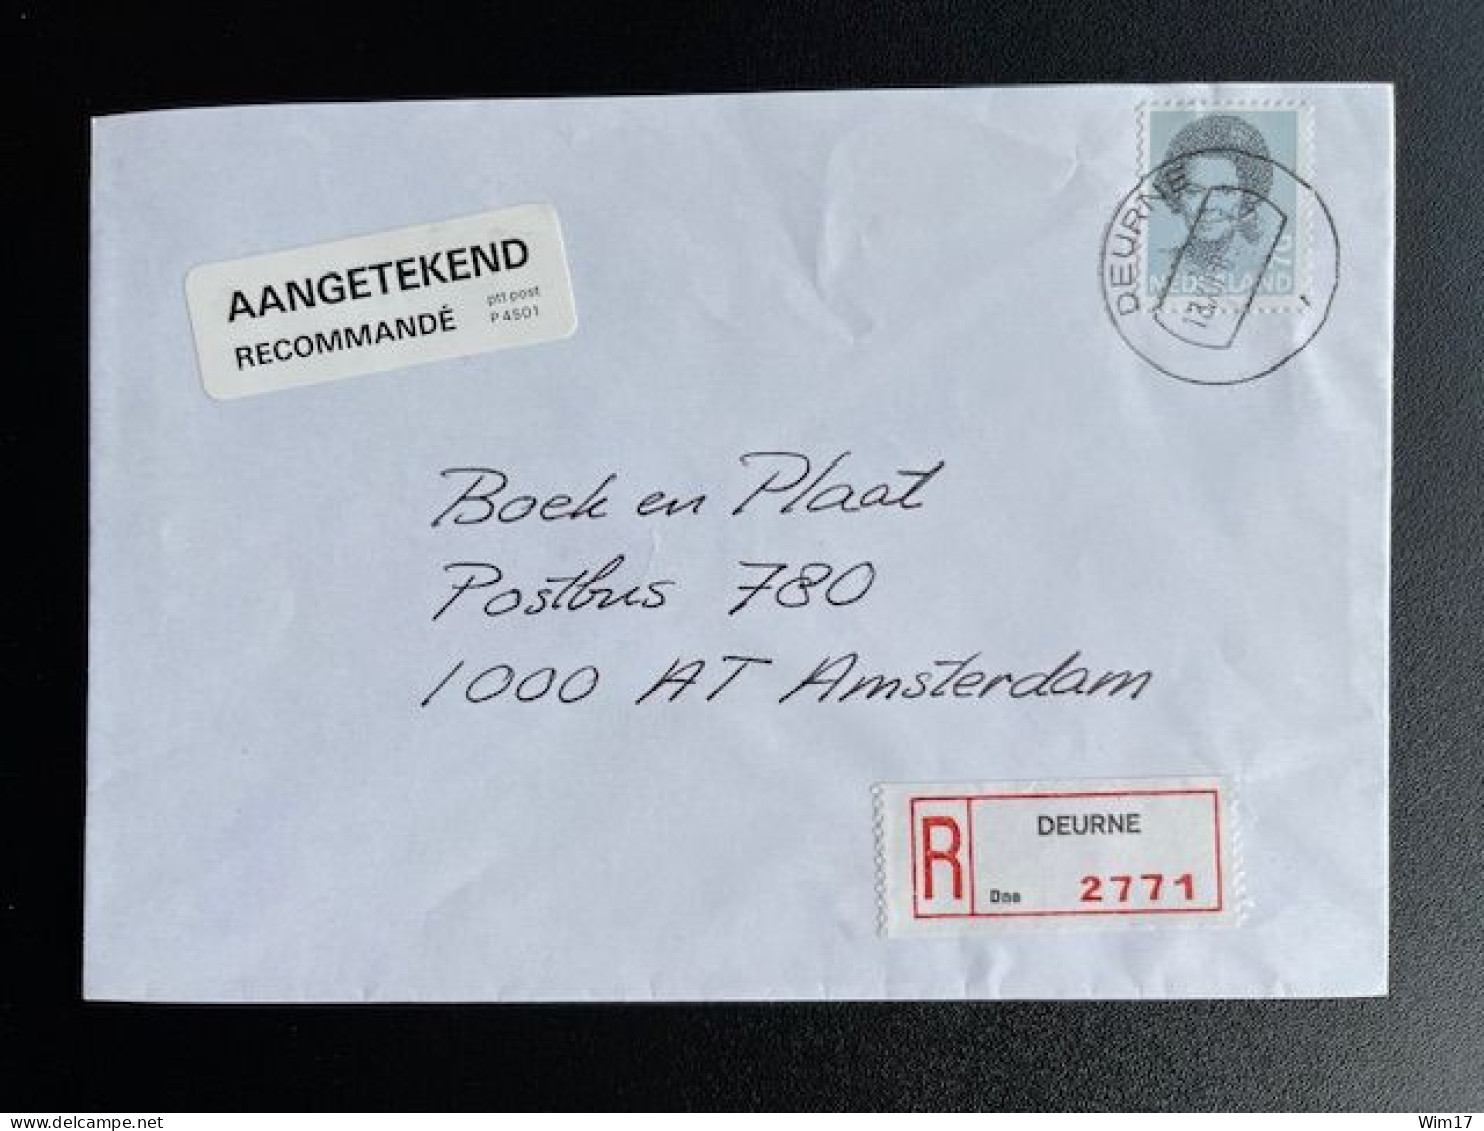 NETHERLANDS 1989 REGISTERED LETTER DEURNE TO AMSTERDAM 18-12-1989 NEDERLAND AANGETEKEND - Storia Postale